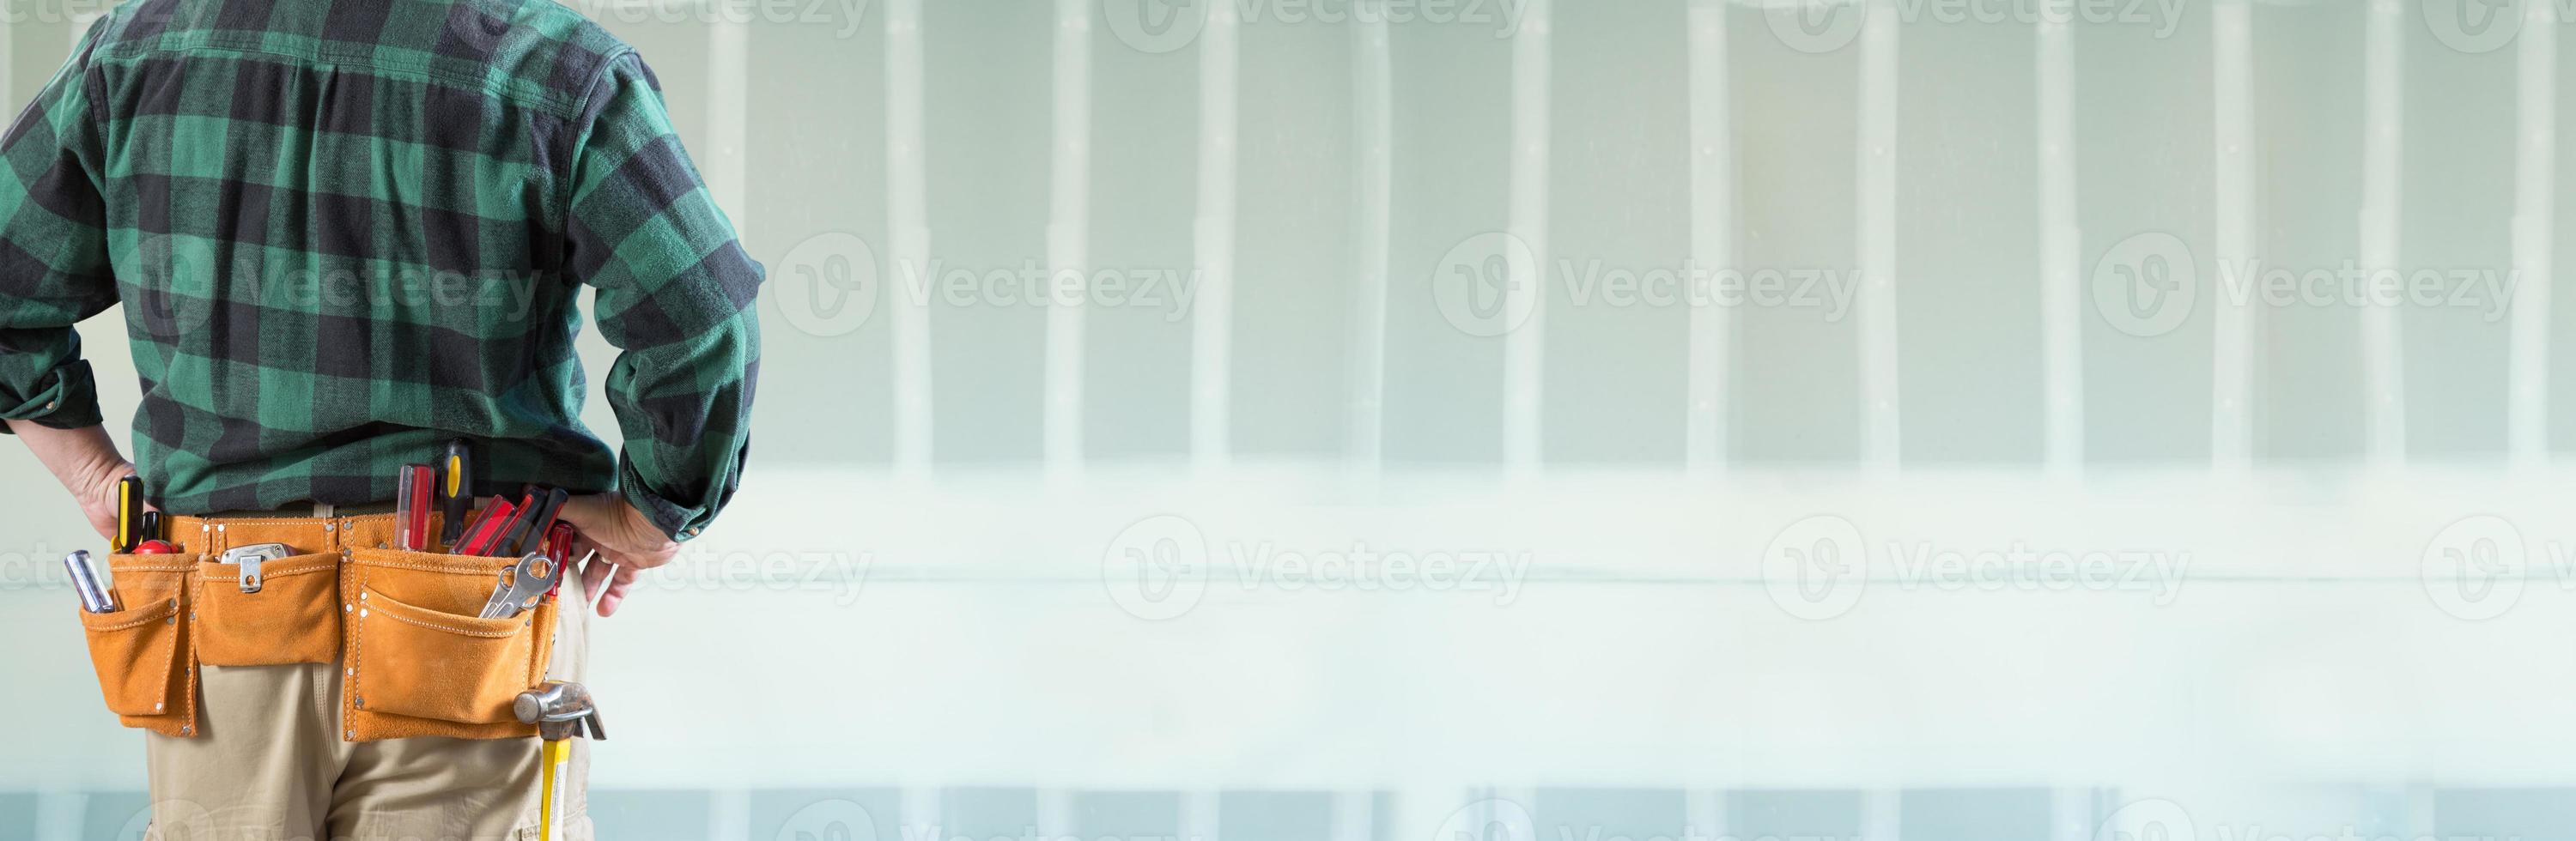 empreiteiro masculino usando cinto de ferramentas voltado para banner de drywall em branco foto